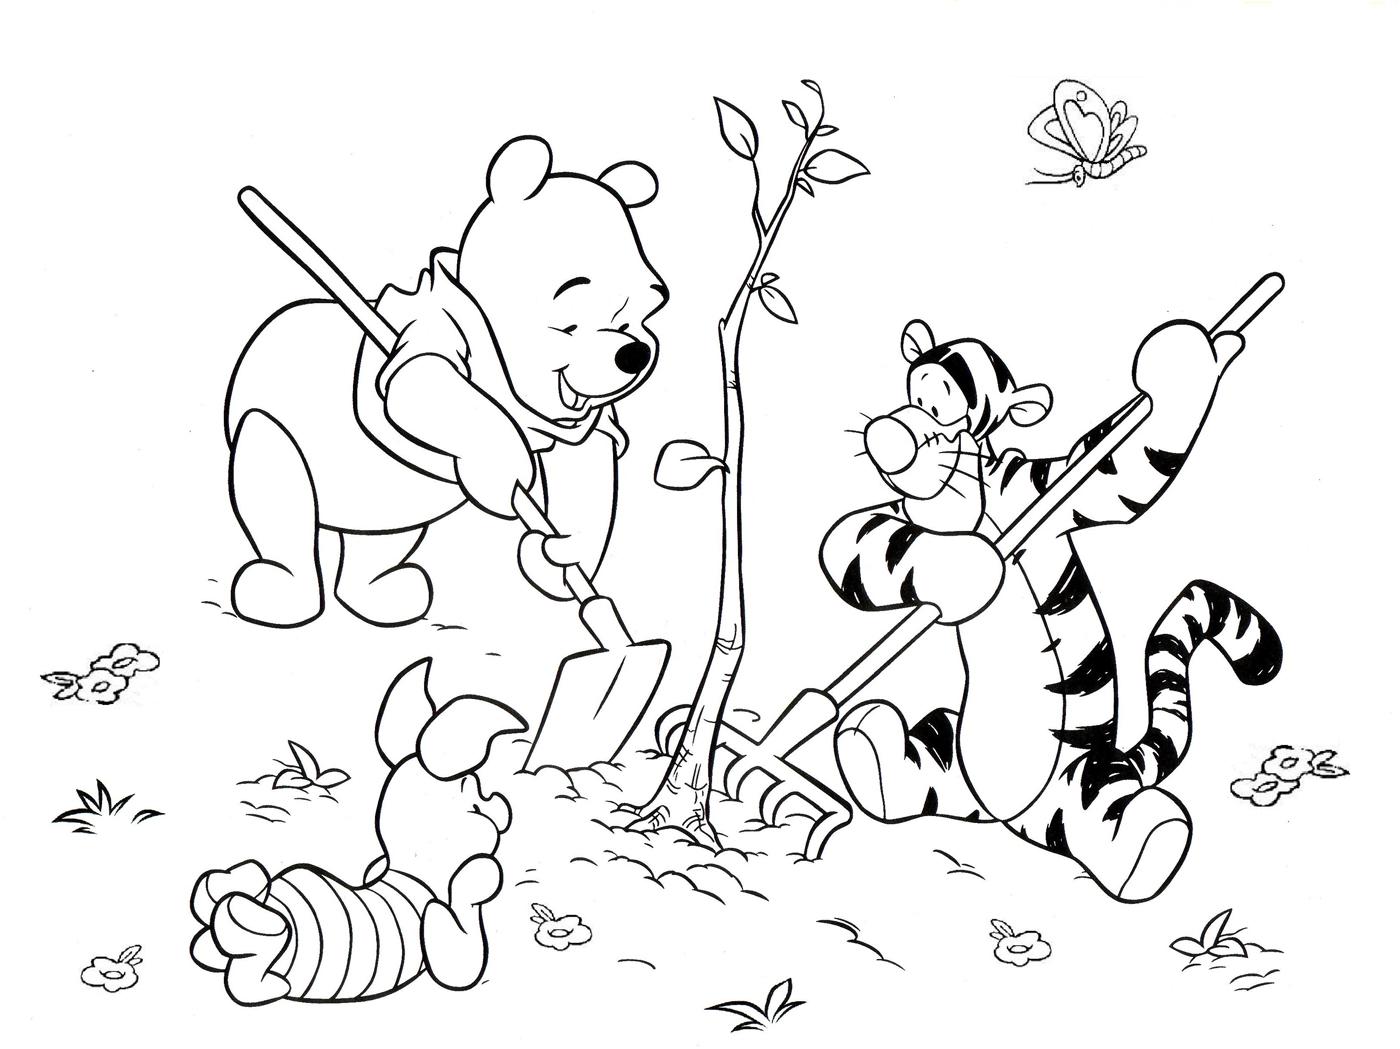 Раскраски из зарубежного мультфильма про Винни Пуха и его друзей для самых маленьких   Раскраска Винни пух, Тигруля и Пяточек сажают дерево